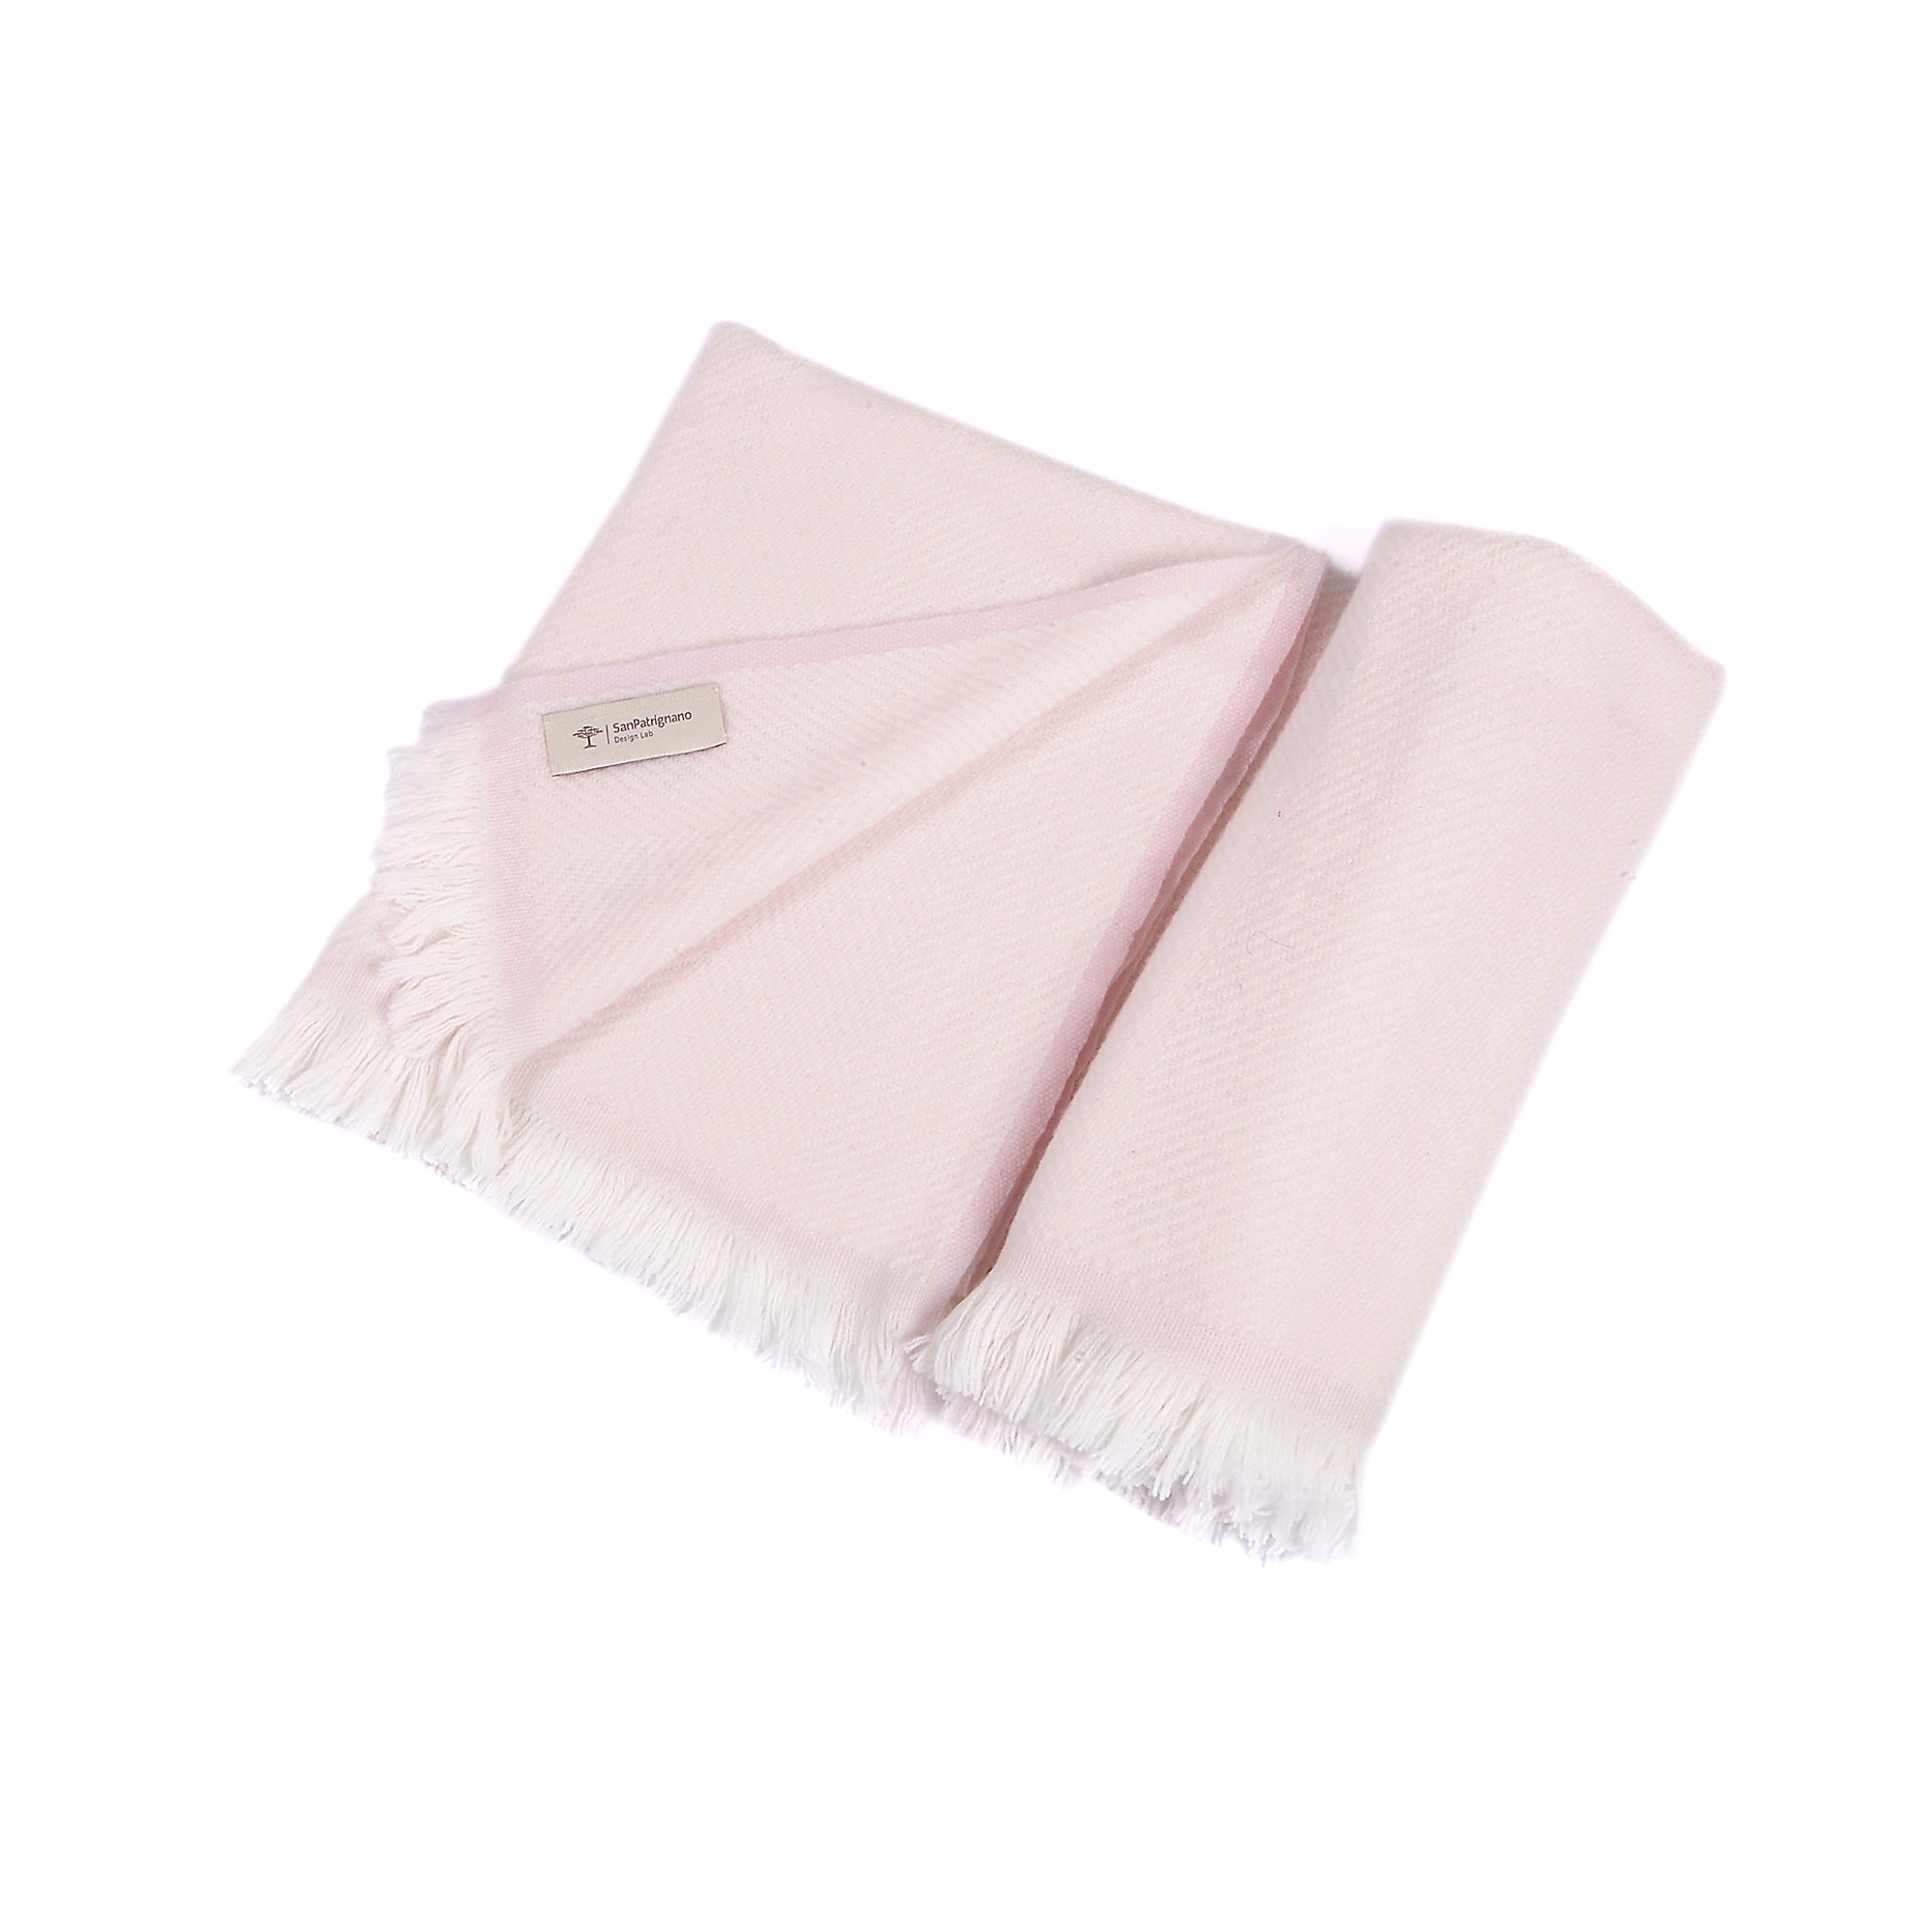 Manta de bebé 100% cachemira en color crema y rosa suave con flecos cortos - Vista principal